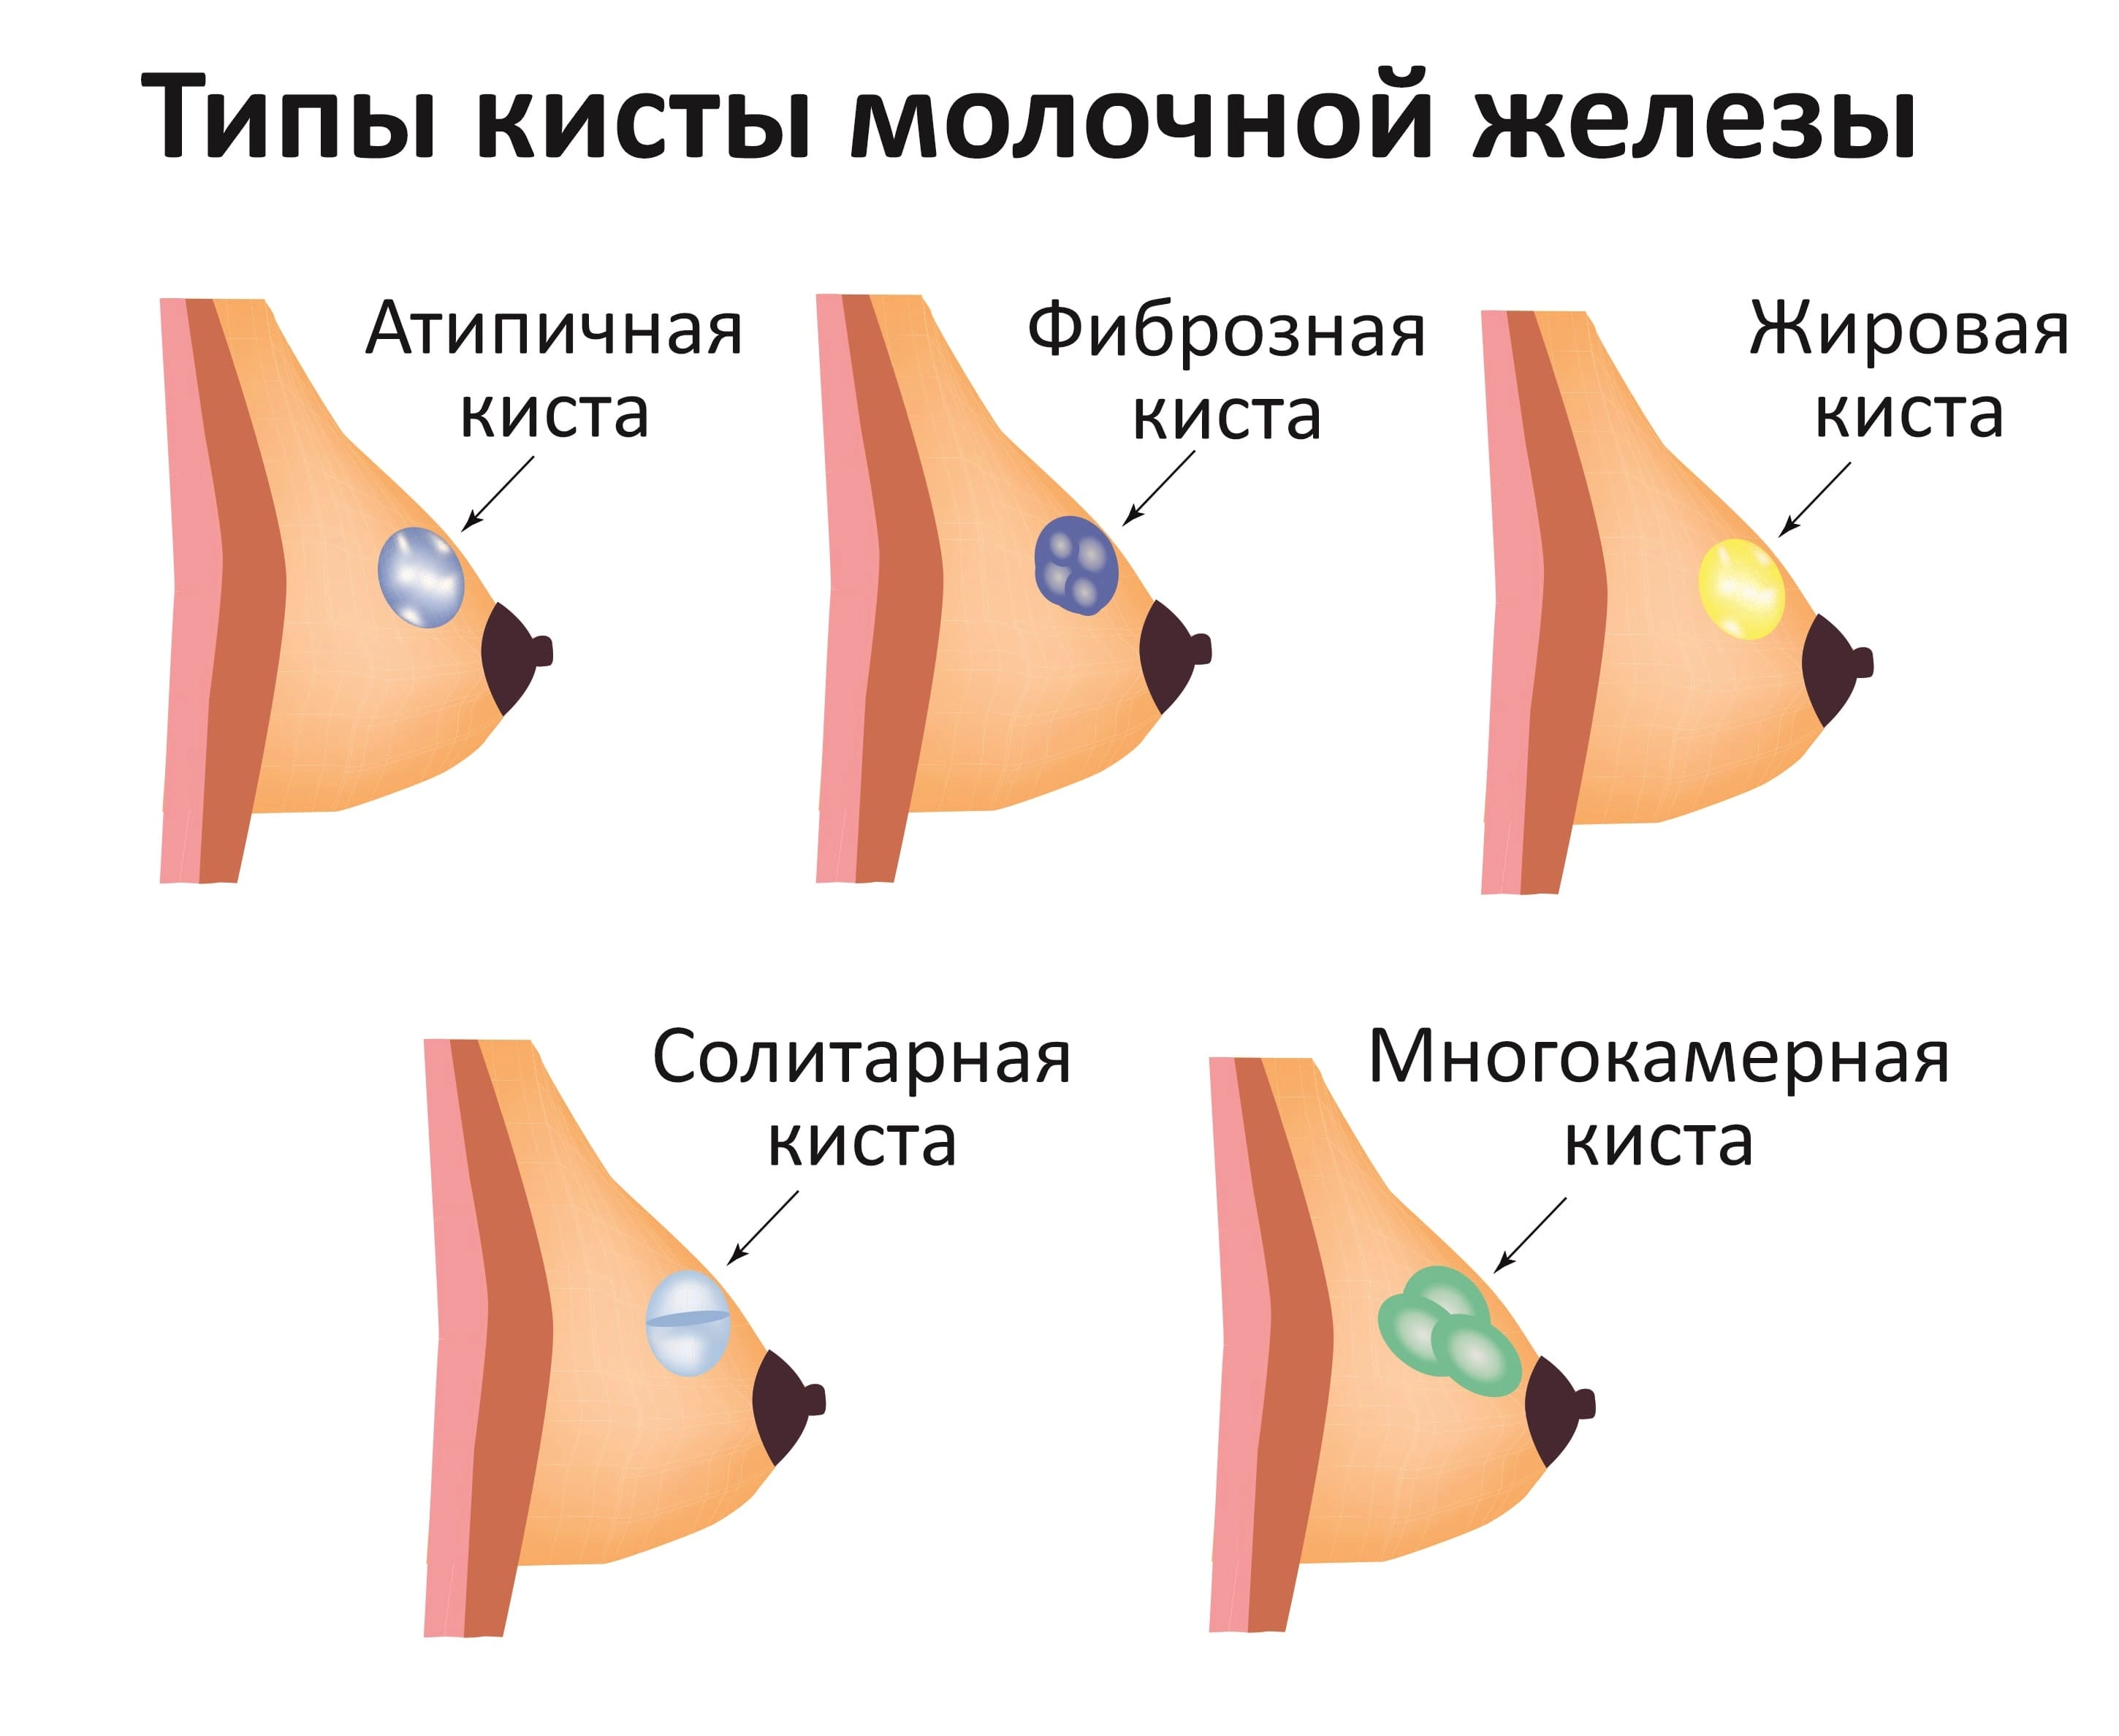 Киста молочной железы - диагностика и лечение опухоли в Москве